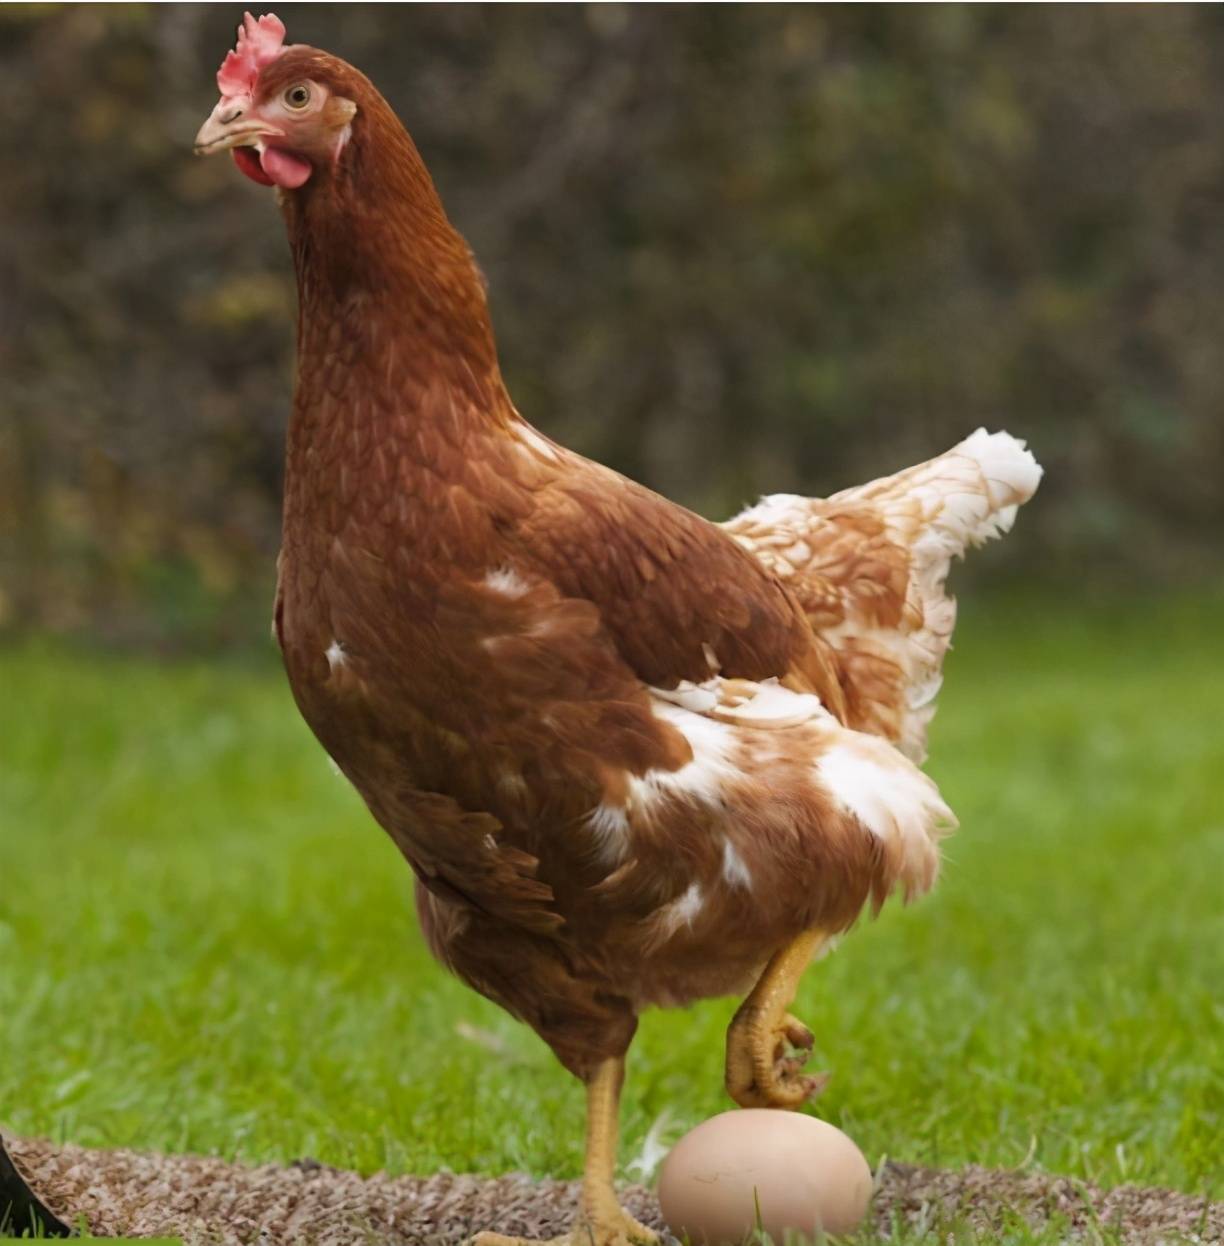 原创没有公鸡,母鸡也能下蛋,那它存在的意义是什么?